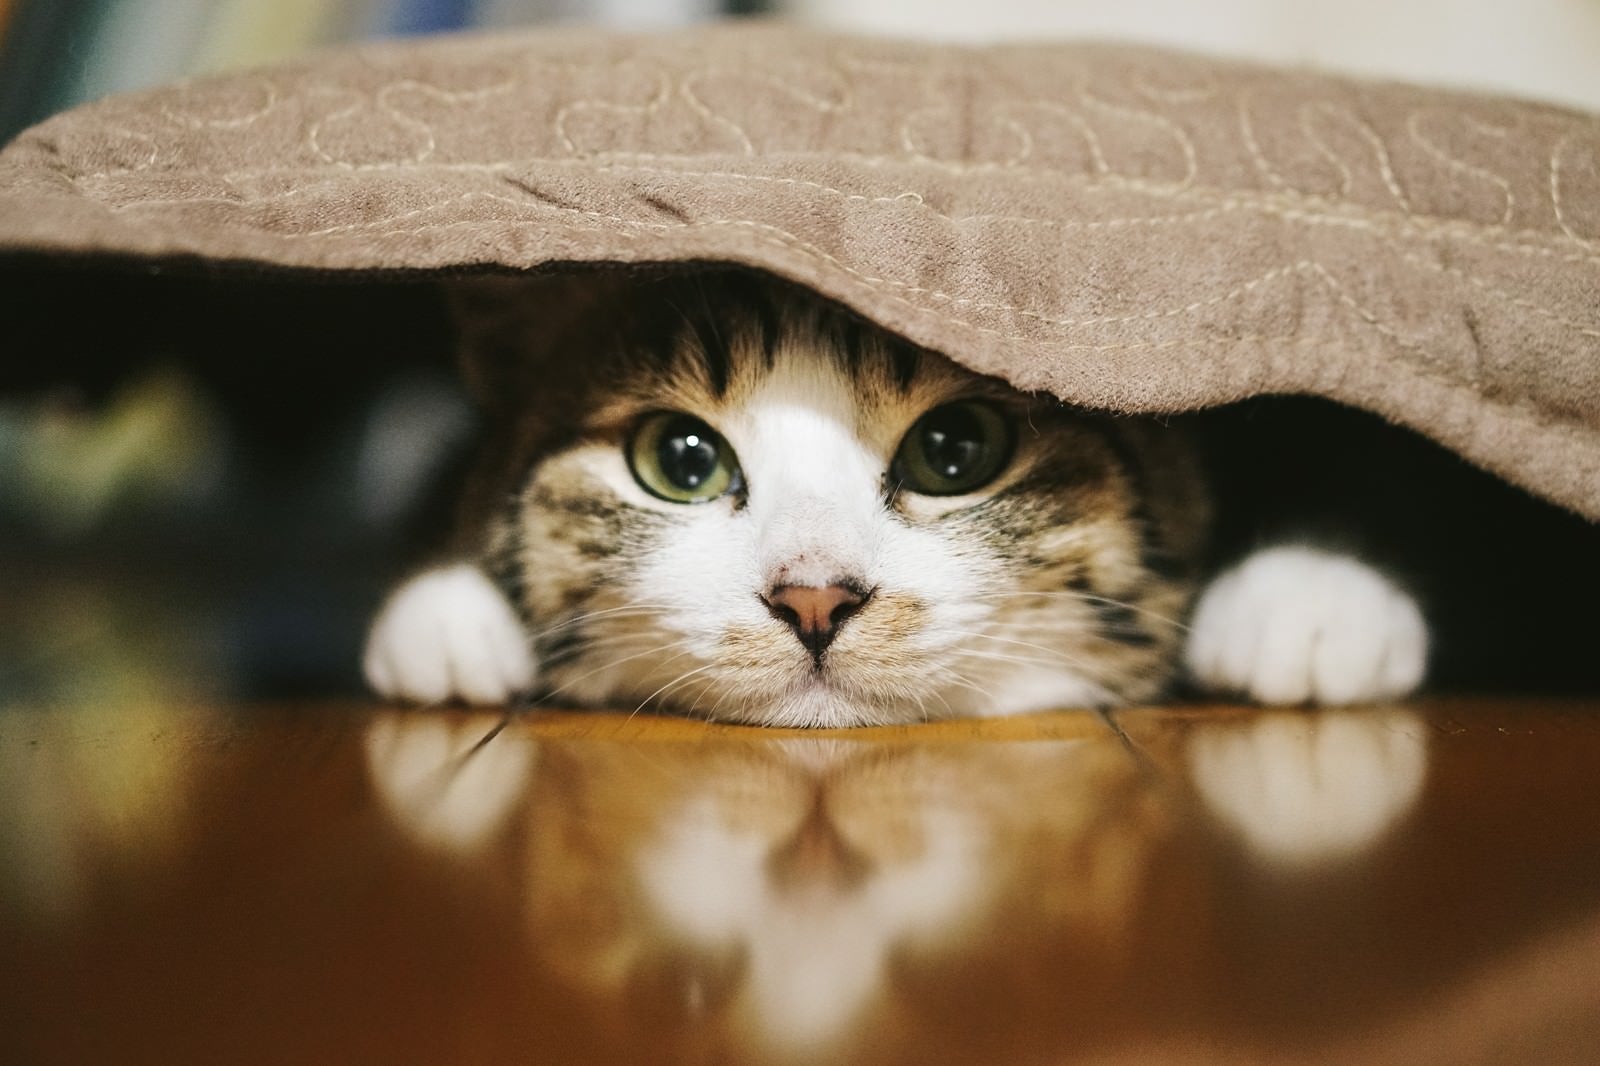 「座布団の下に潜む猫」の写真